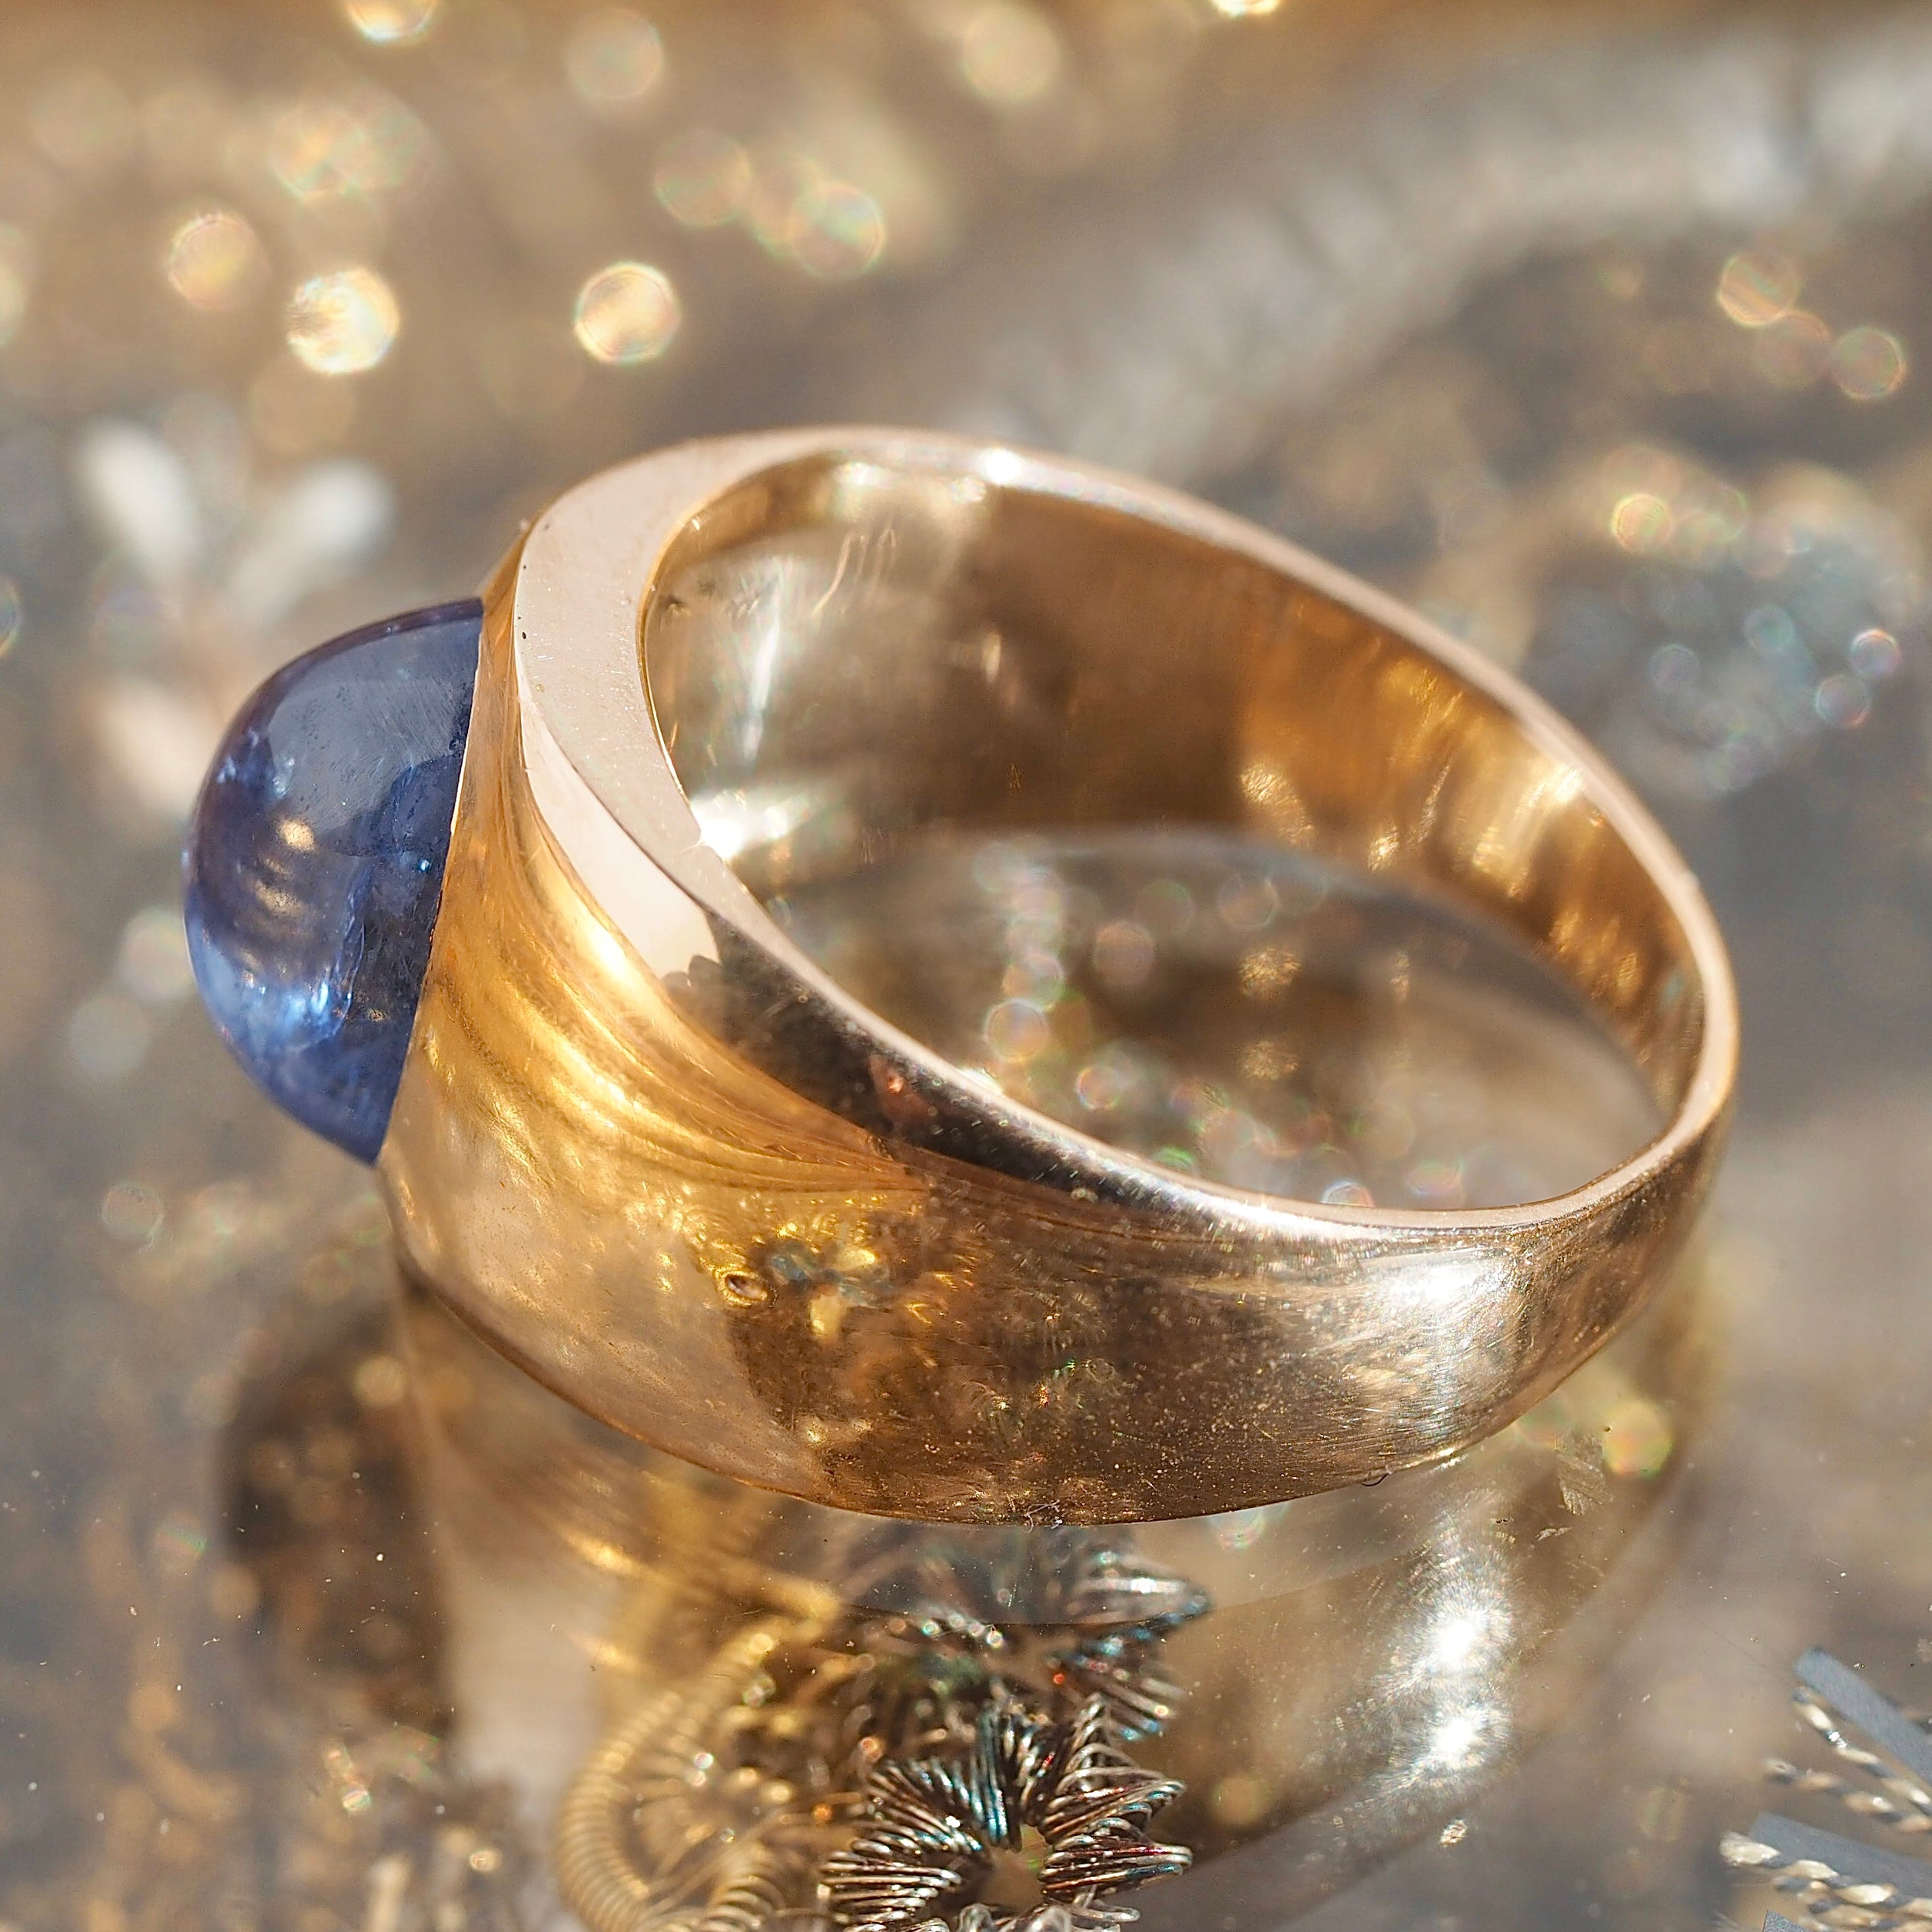 Vintage 14k Gold Natural Sapphire Sugarloaf Cabochon Ring